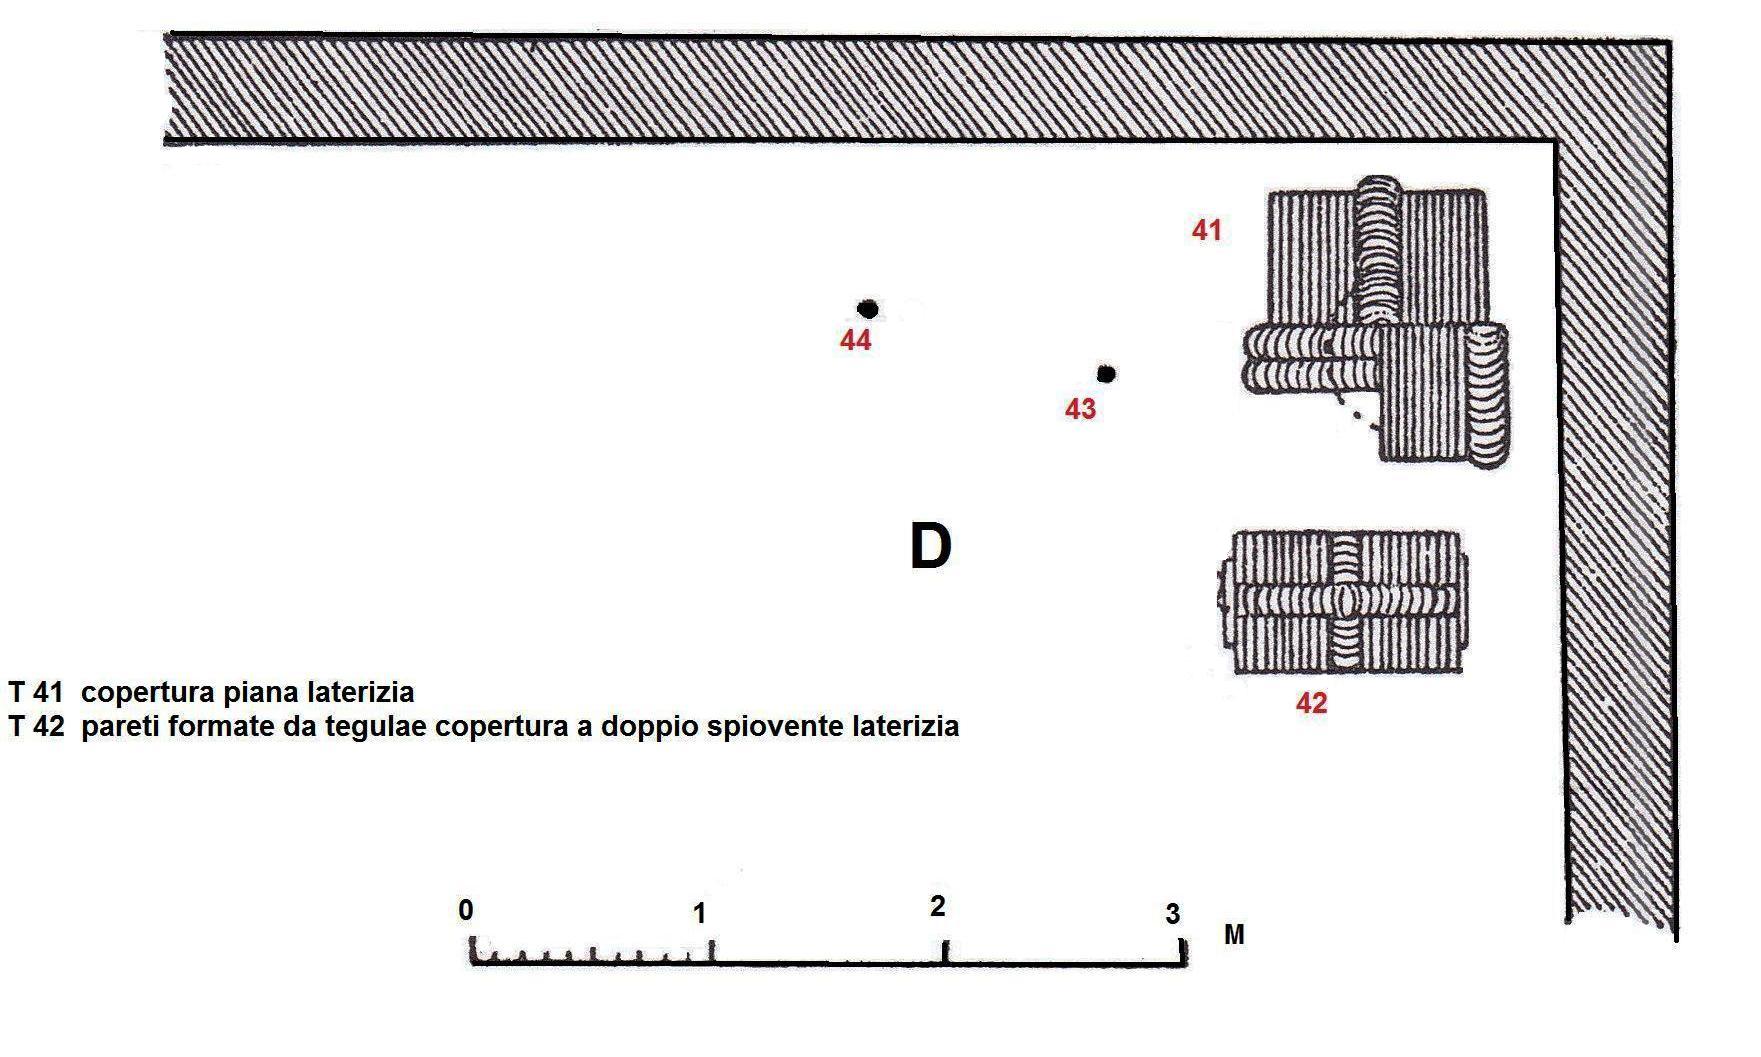 Necropoli di Albintimilium, recinto D, tomba 43 (tomba a incinerazione, area ad uso funerario) - Ventimiglia (IM)  (metà/ metà Età romana imperiale)